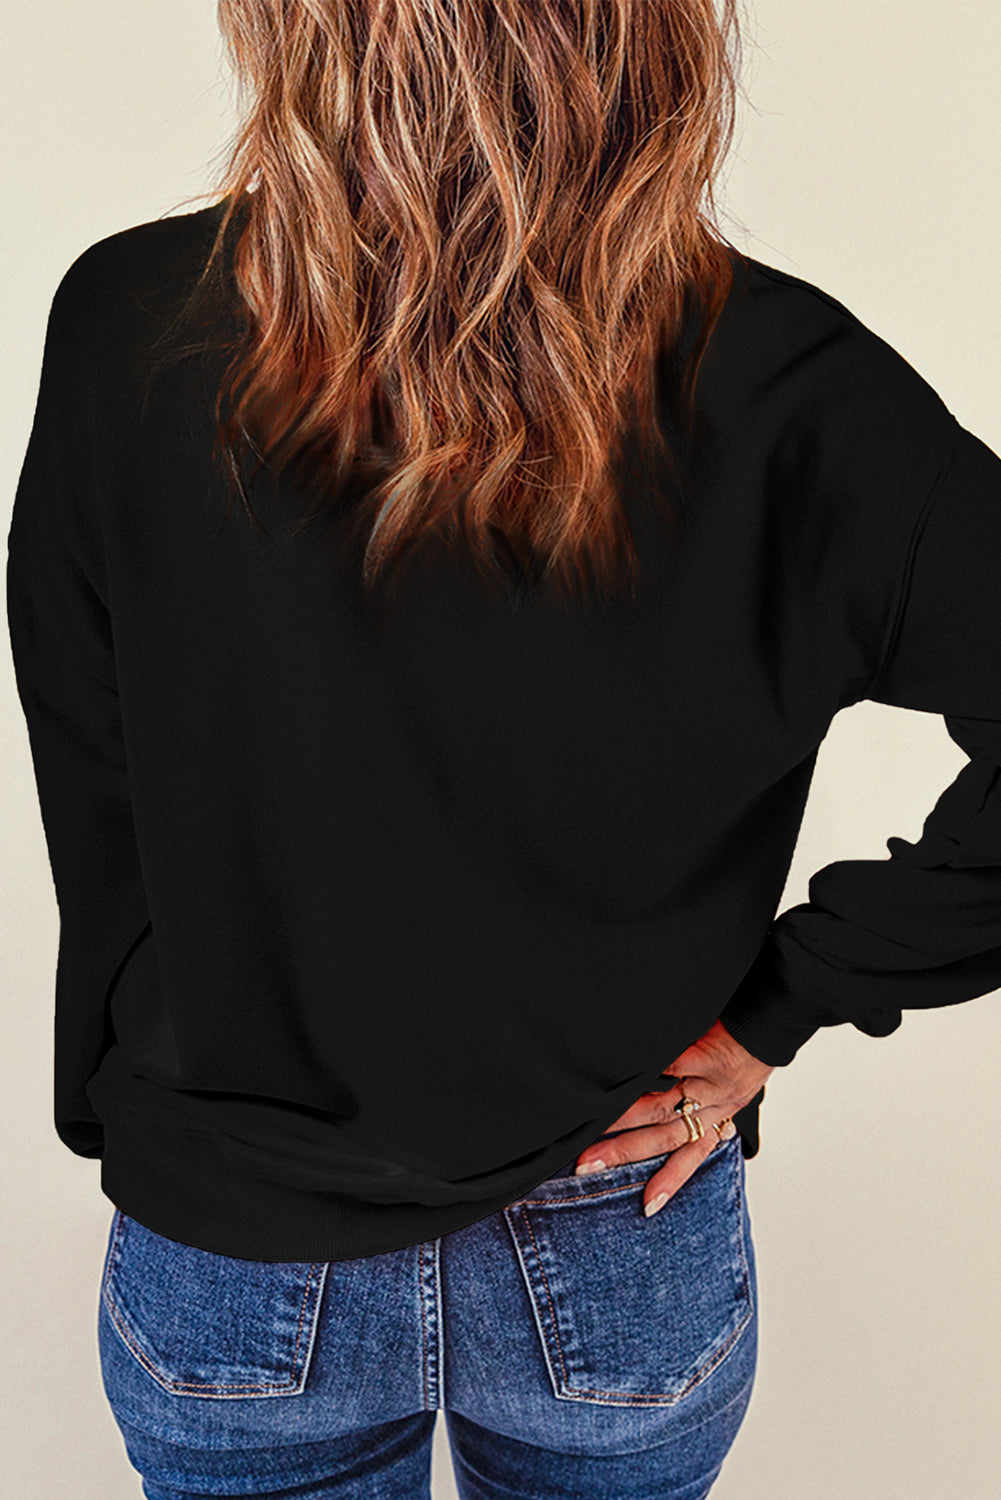 Black Sequin Halloween Pumpkin Graphic Pullover Sweatshirt Graphic Sweatshirts JT's Designer Fashion